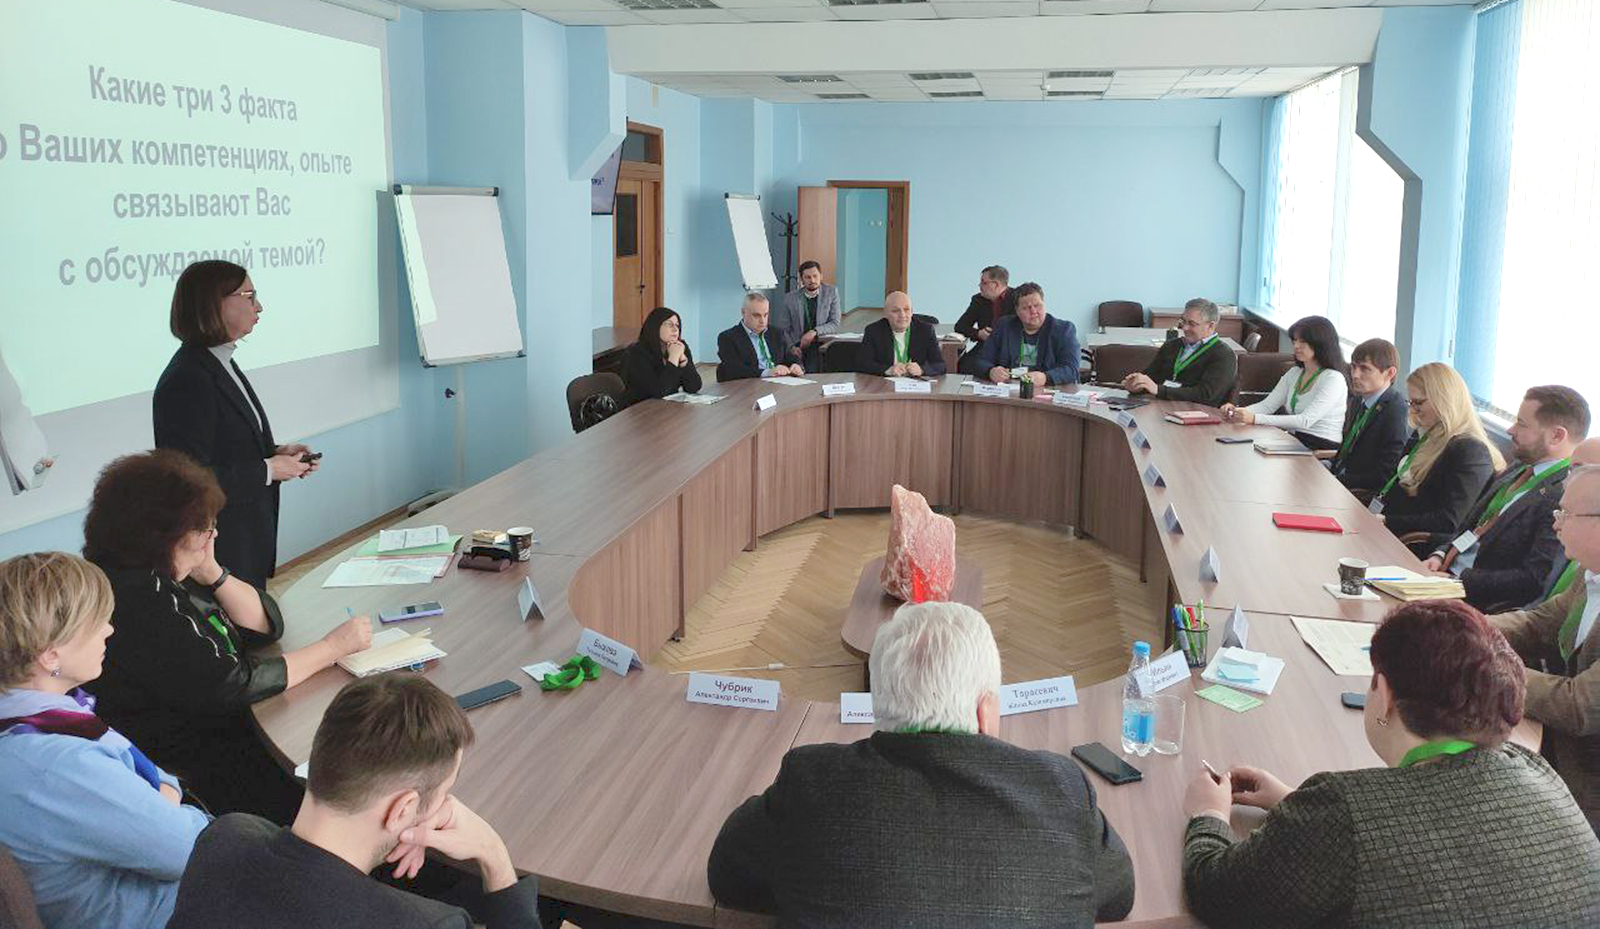 Андрей Картун принял участие в форсайт-сессии «Стратегия прорывного развития: видение бизнес-сообщества» в рамках разработки НСУР-2040